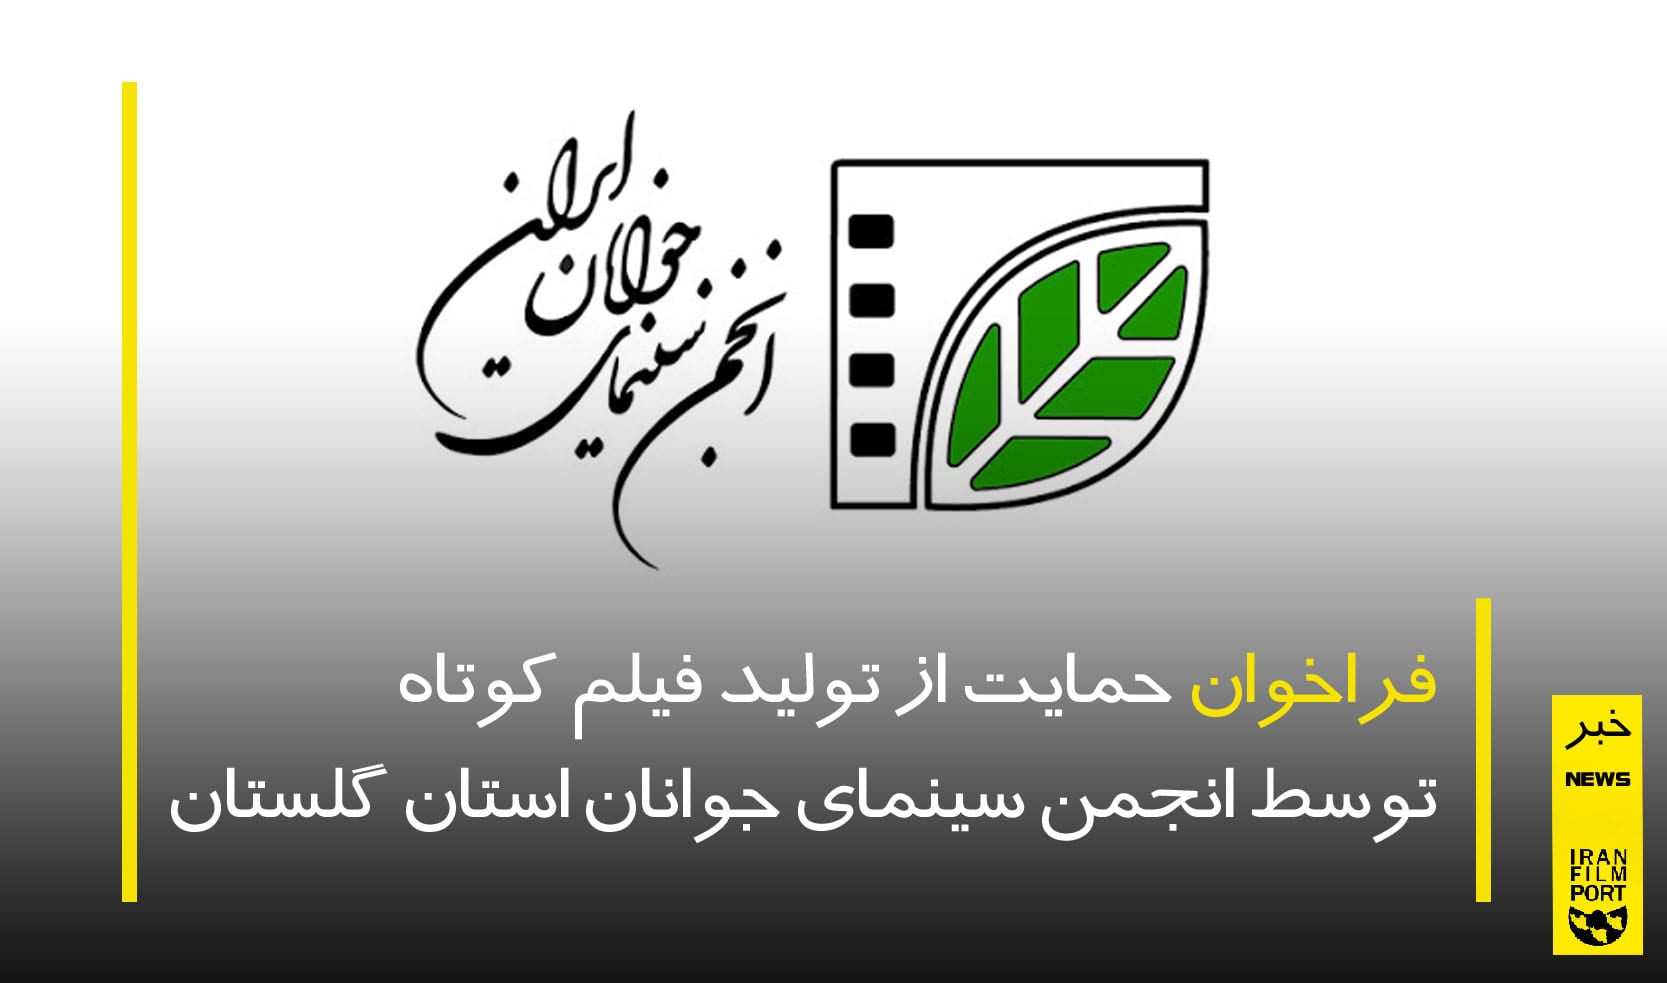 فراخوان حمایت از تولید فیلم کوتاه توسط انجمن سینمای جوانان استان گلستان